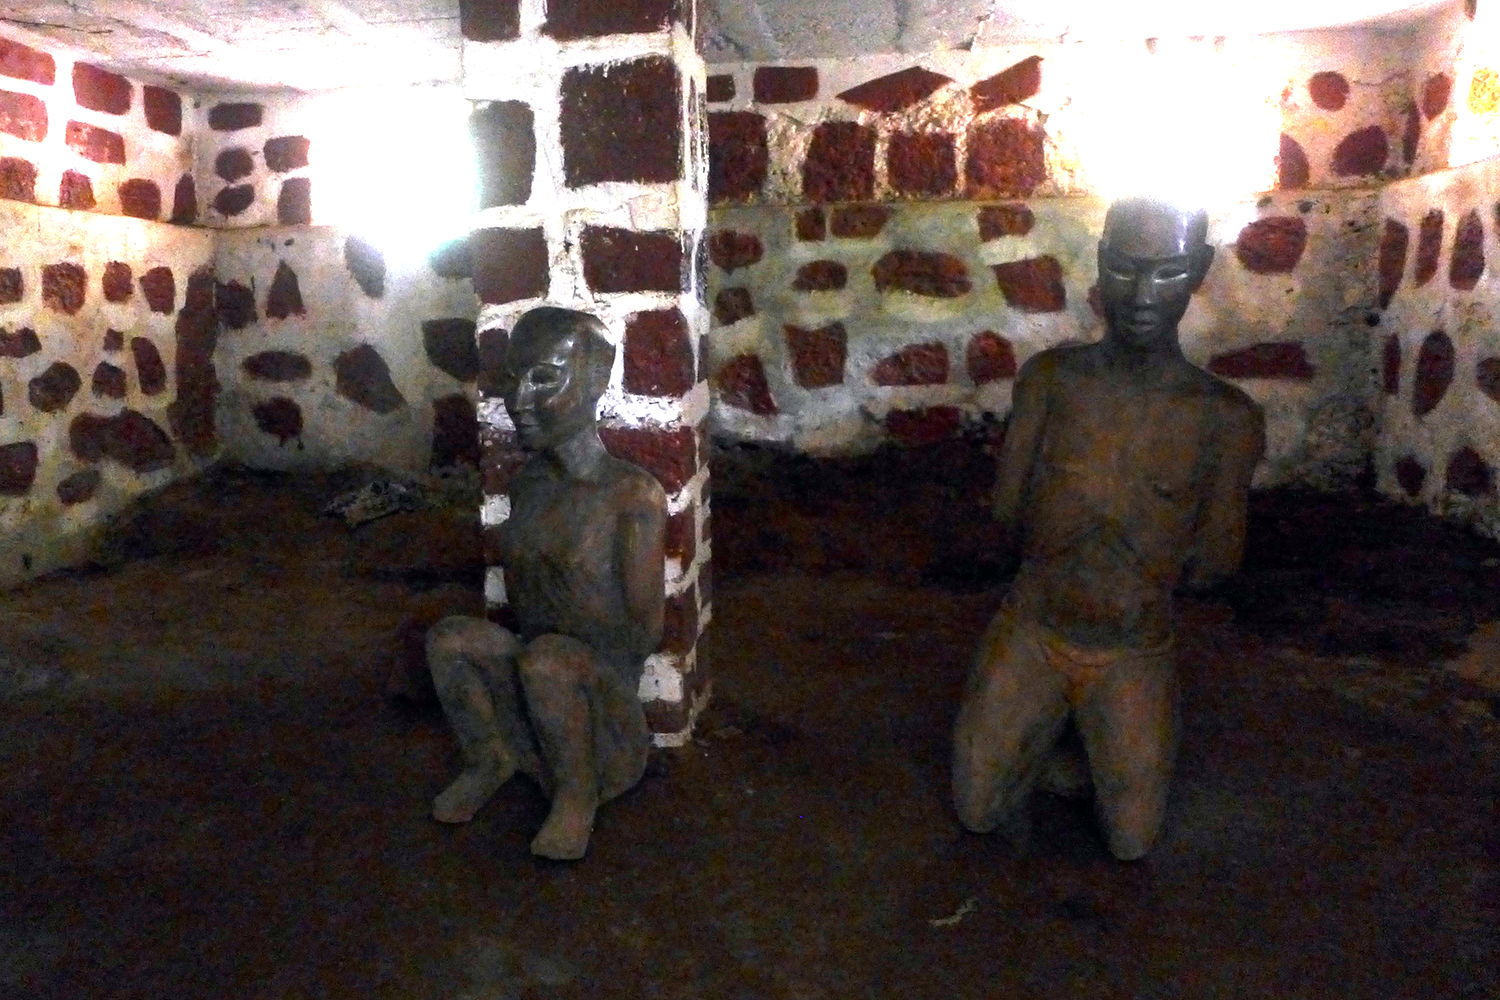 La cave où étaient cachés les esclaves avant leur départ pour l’Amérique après l’abolition de la traite négrière.